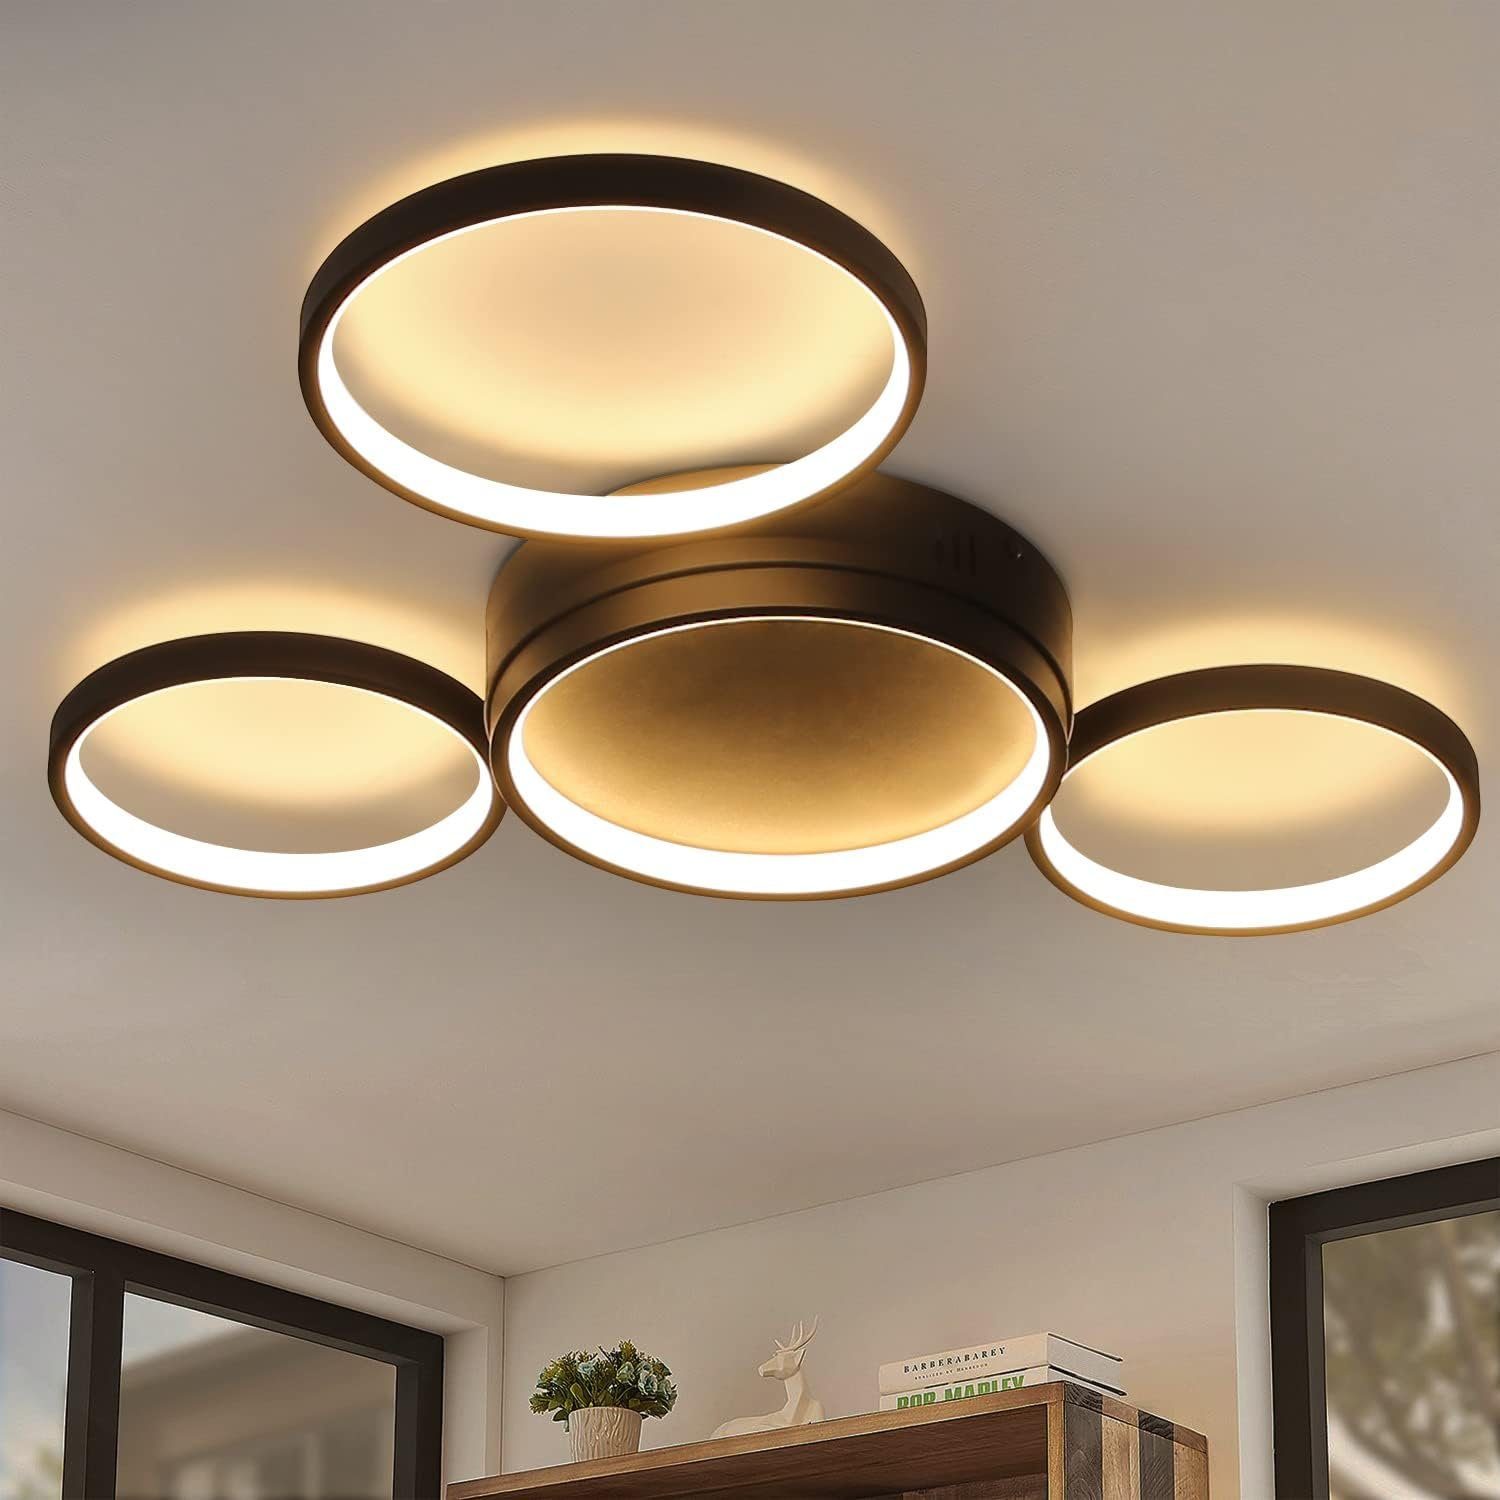 Nettlife LED Deckenleuchte Deckenlampe mit 4 Metall Ringe Dimmbar mit Fernbedienung, LED fest integriert, Warmweiß, für Wohnzimmer Küche Schlafzimmer, 29W